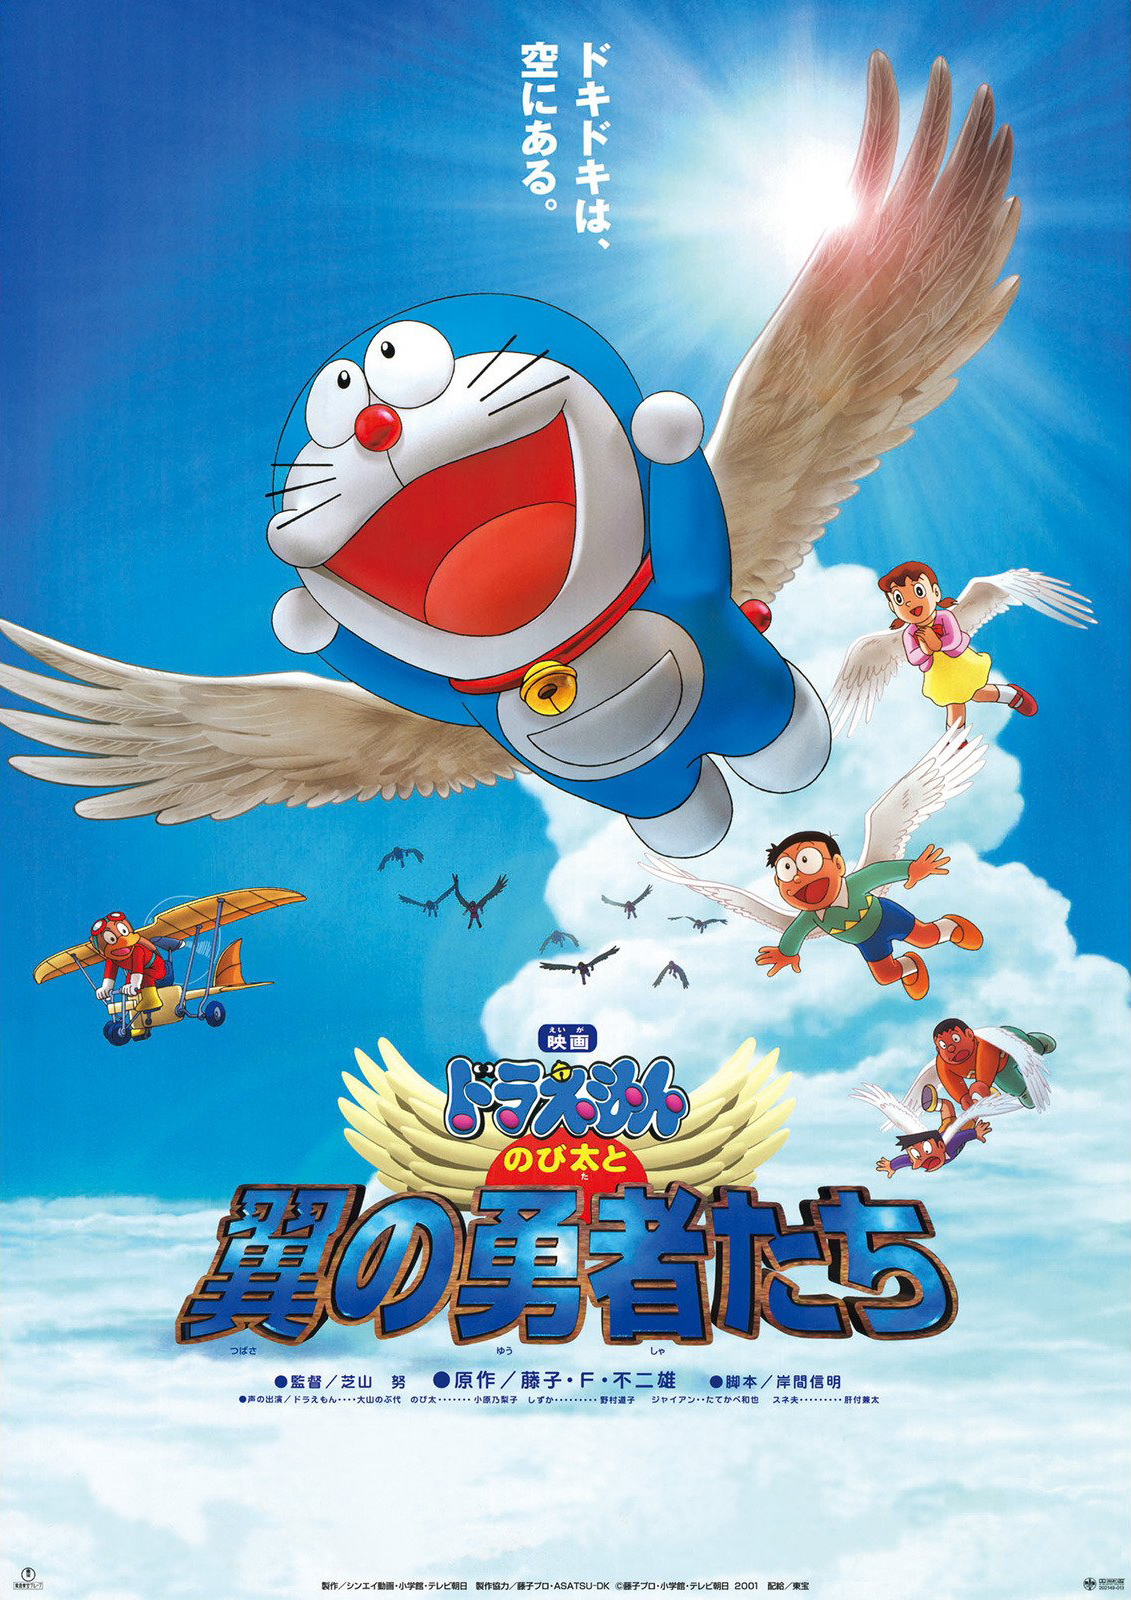 ดูหนังออนไลน์ฟรี Doraemon The Movie (2001) โดราเอมอน ตอน โนบิตะและอัศวินแดนวิหค